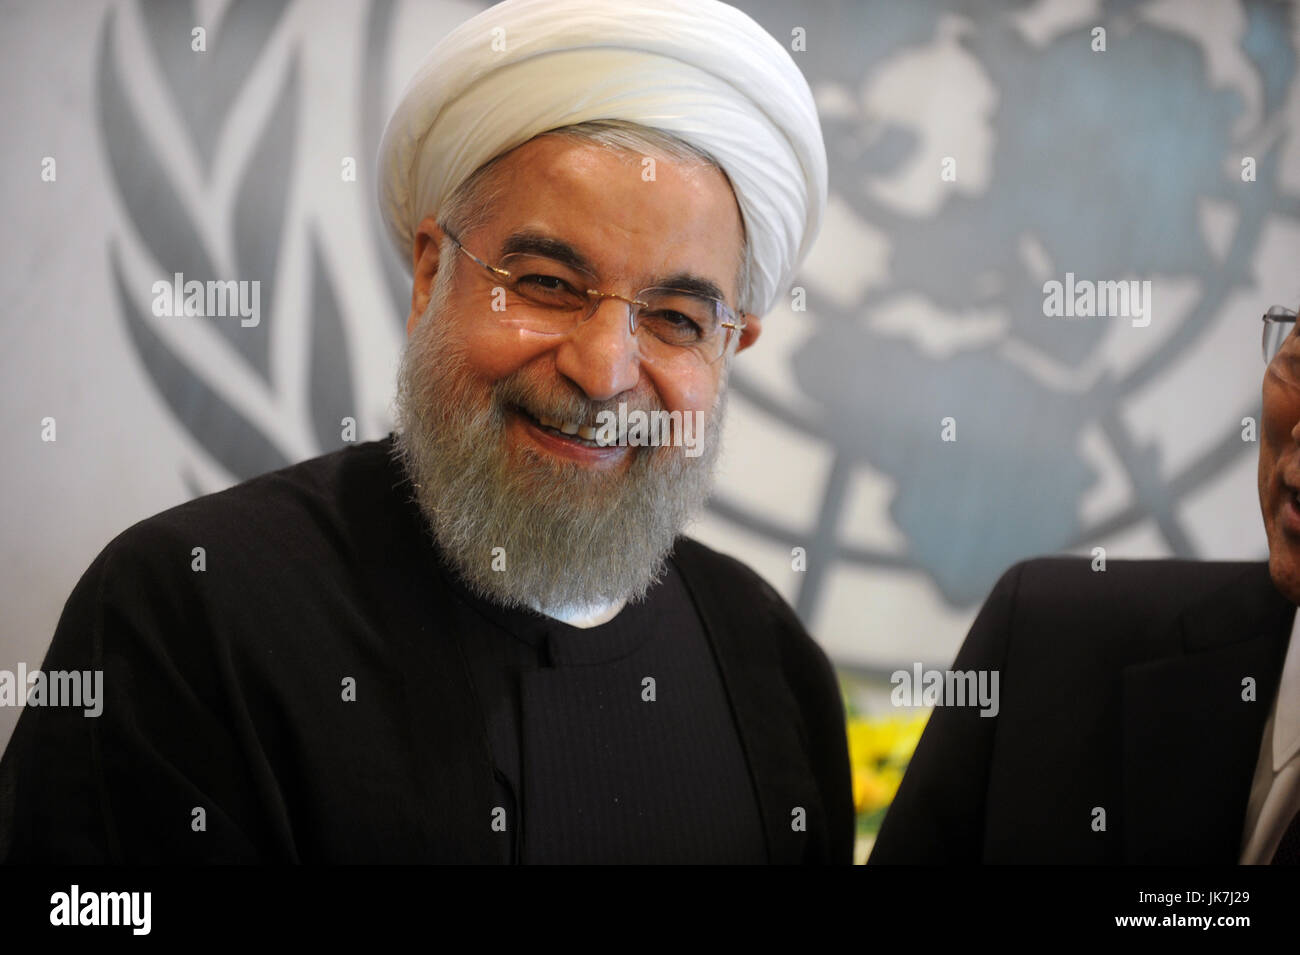 Du Président iranien Hassan Rohani visite le l'Organisation des Nations Unies le 26 septembre 2015 à New York. Crédit : Dennis Van Tine/MediaPunch Banque D'Images